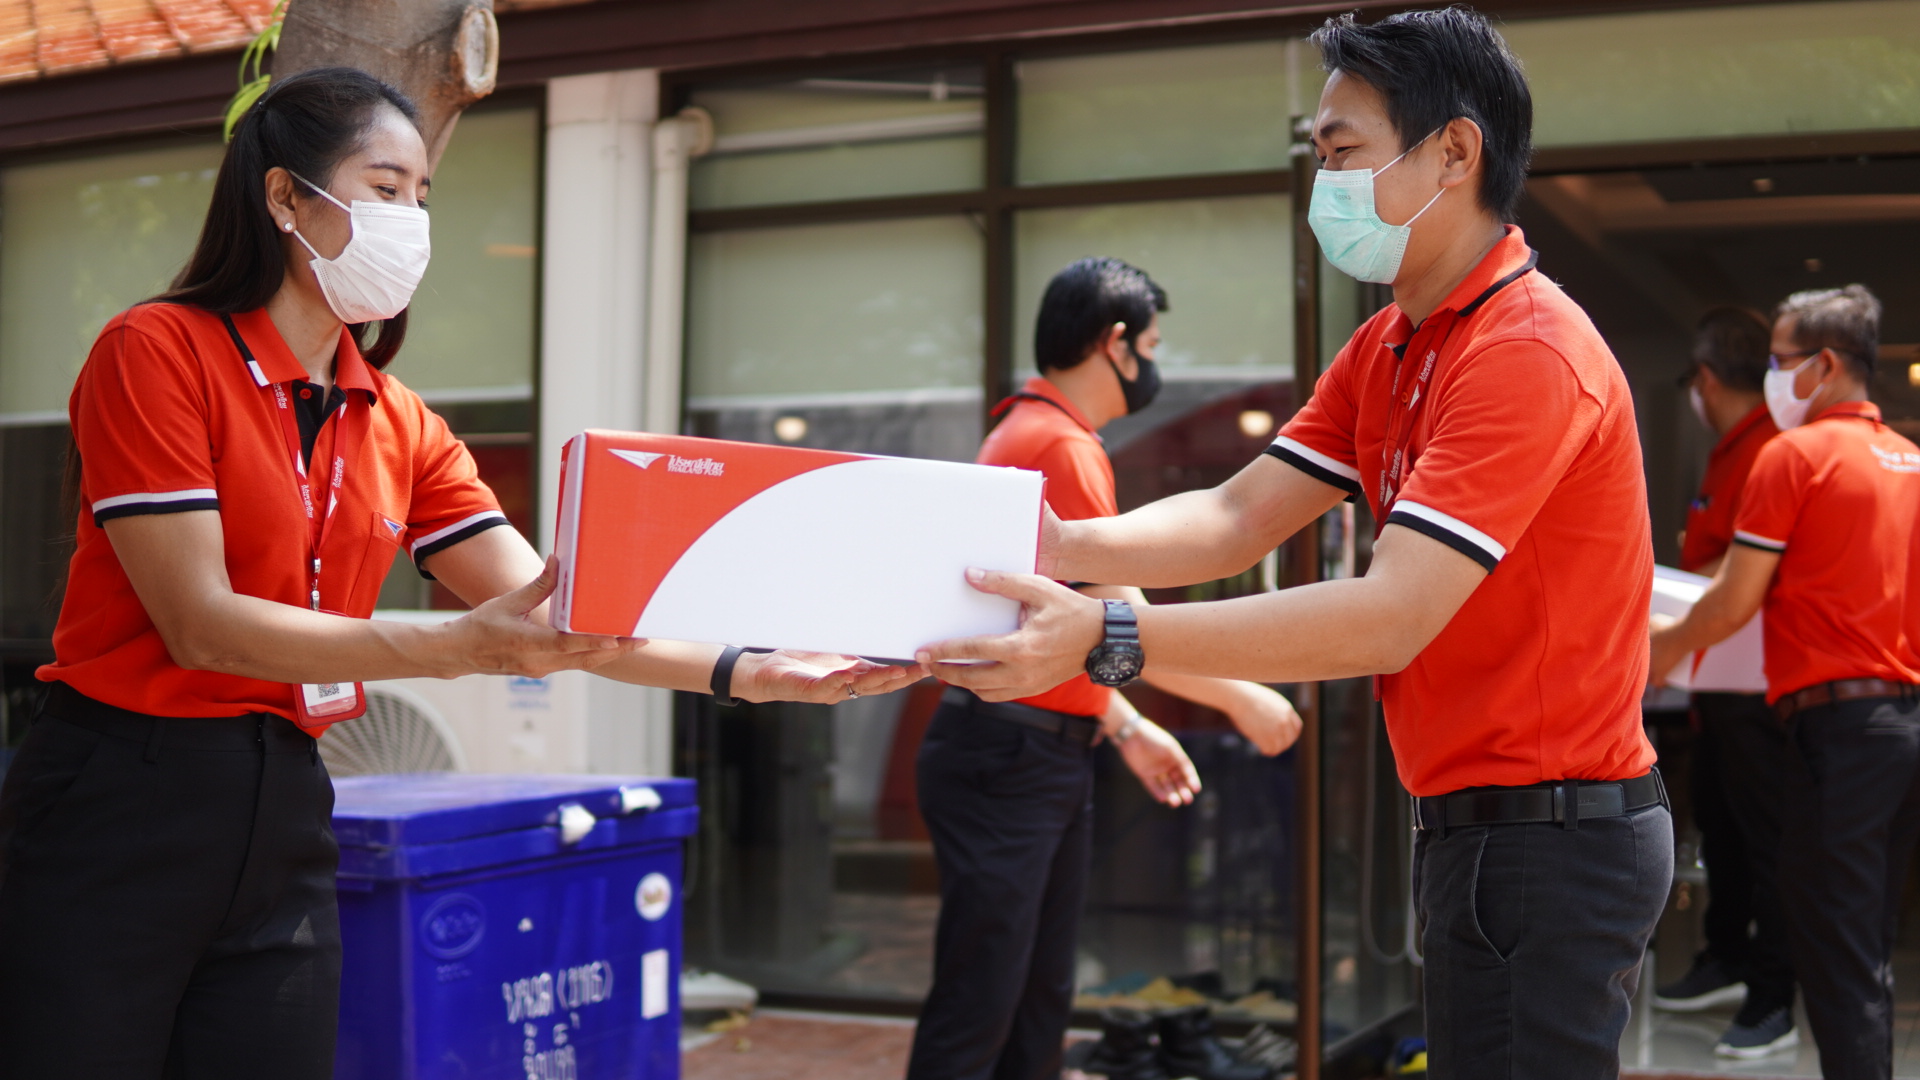 ไปรษณีย์ไทย อาสาหน่วยงานรัฐร่วมส่งต่อความห่วงใยถึงทีมแพทย์ เผยส่งหน้ากากอนามัยถึงมือหมอทุกชิ้น